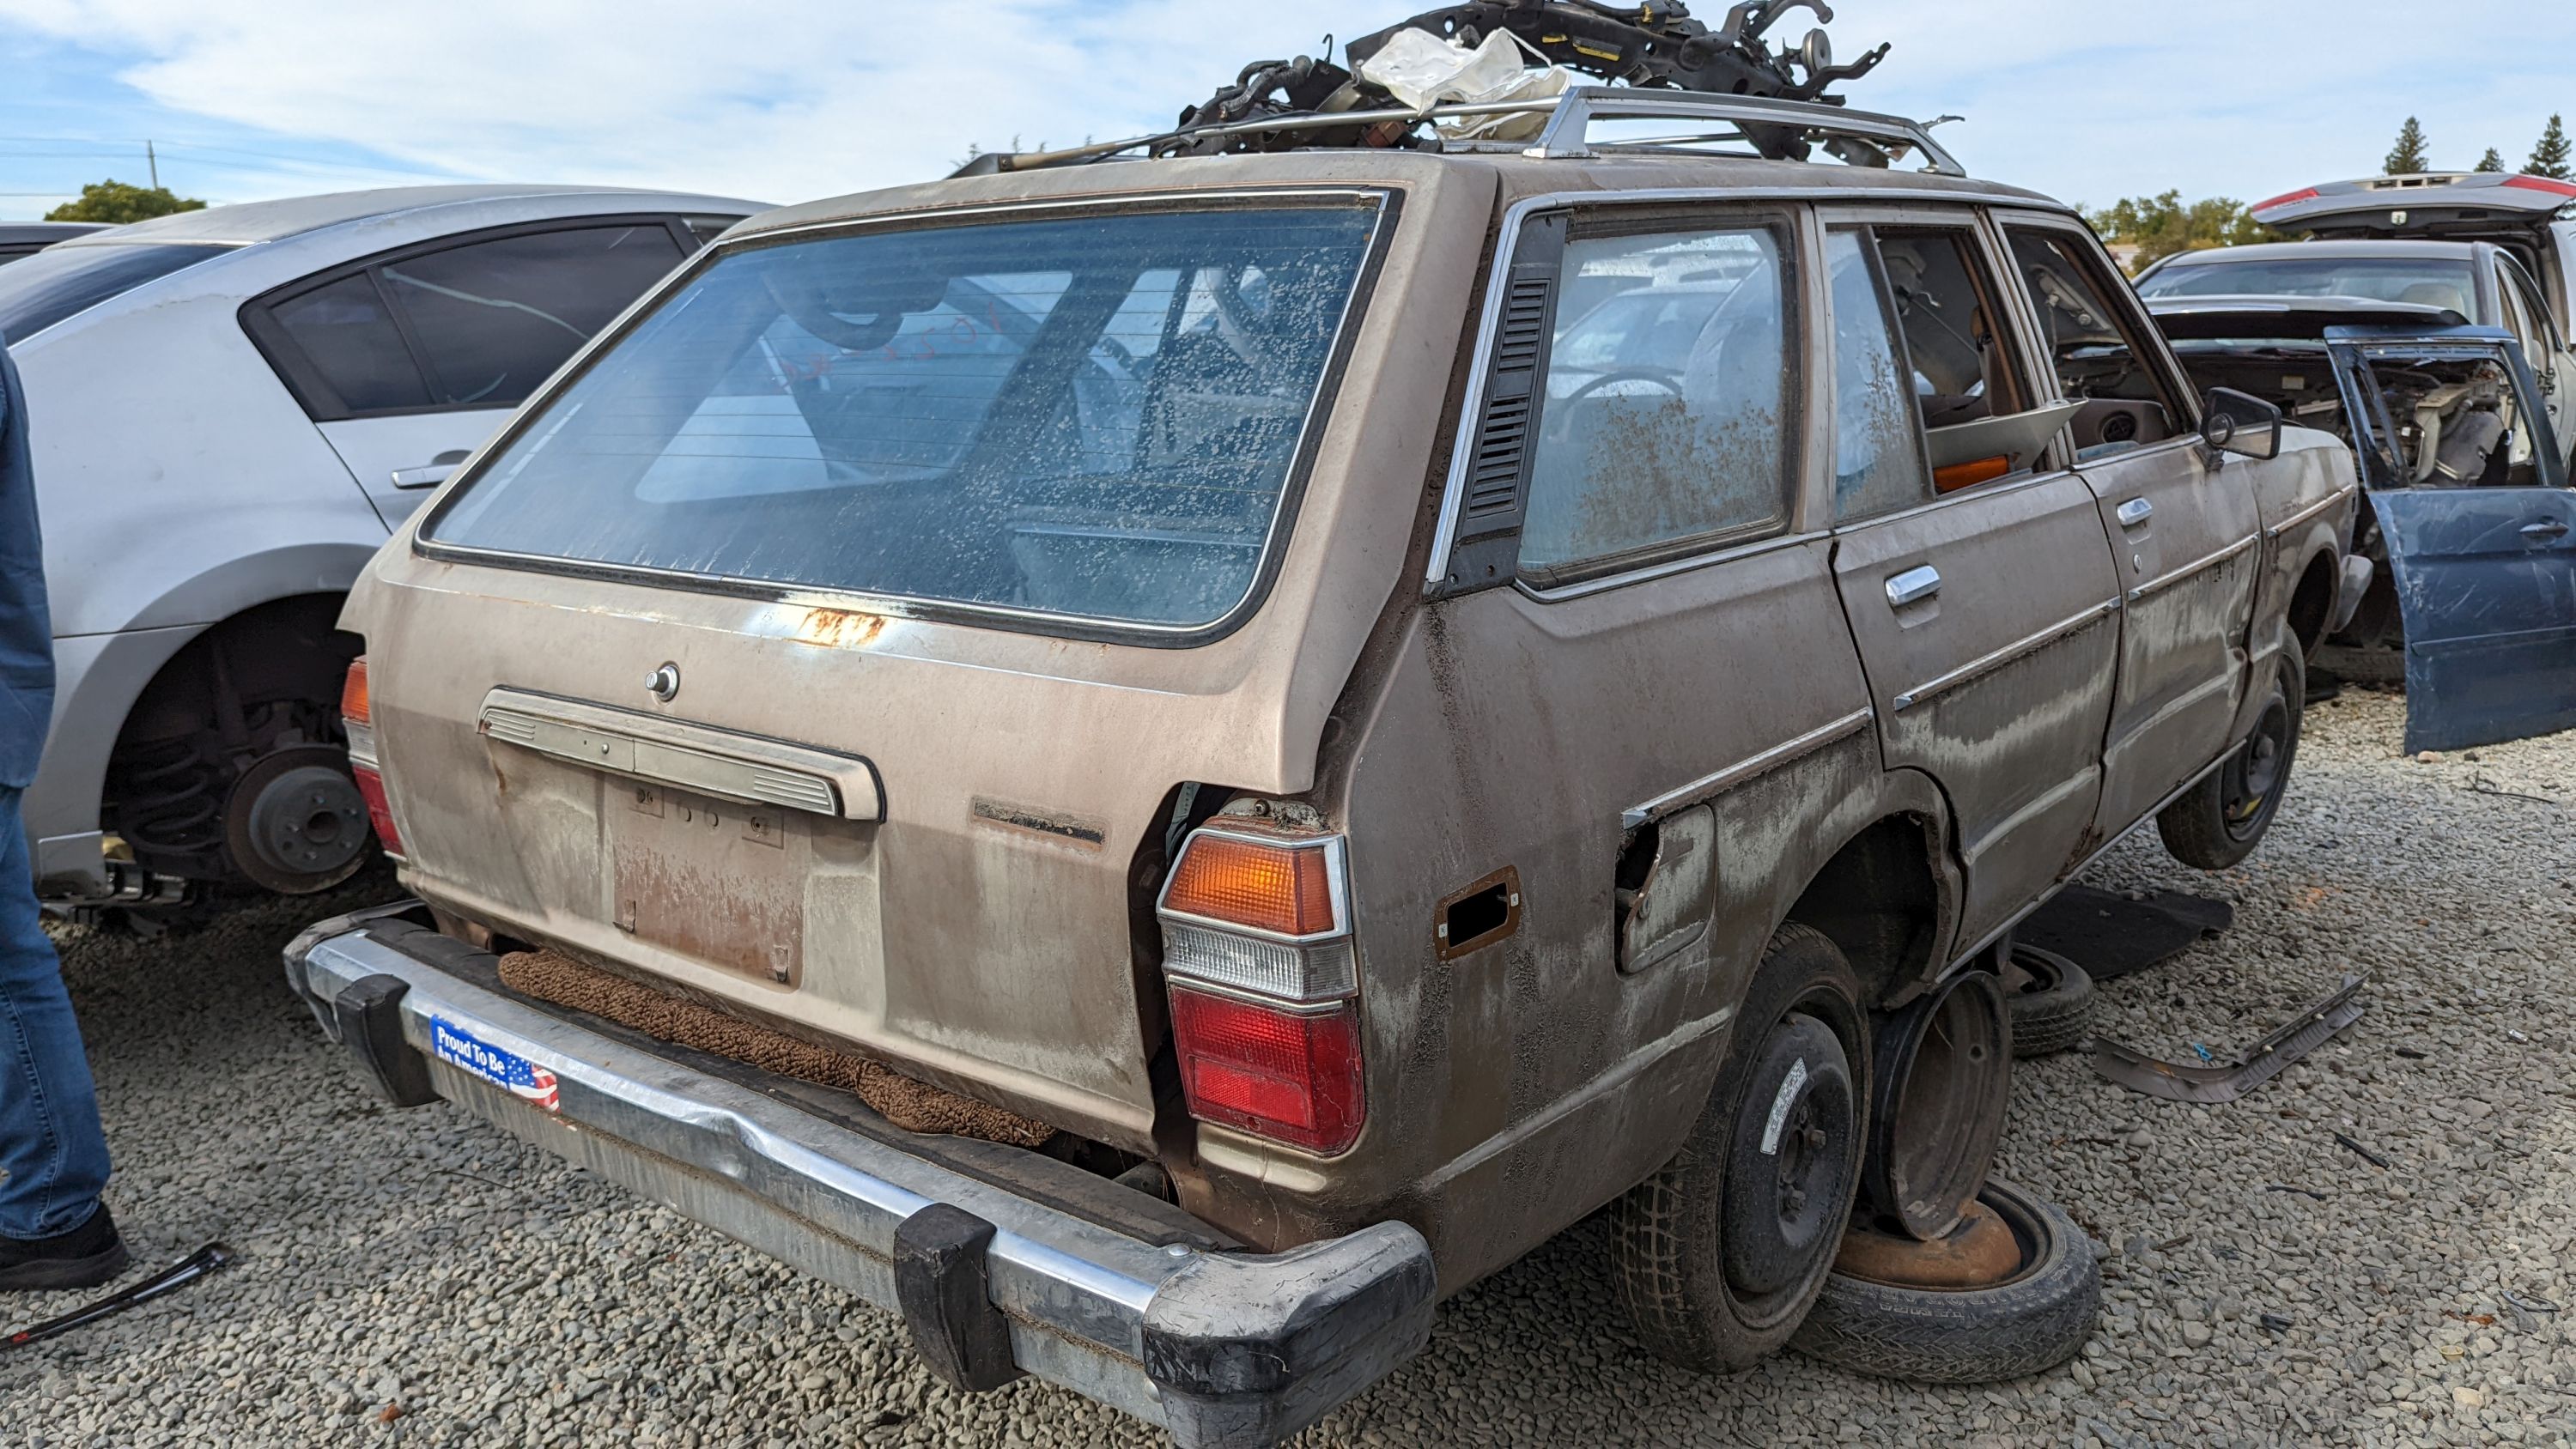 32 - 1978 Datsun 510 wagon in California junkyard - photo by Murilee Martin